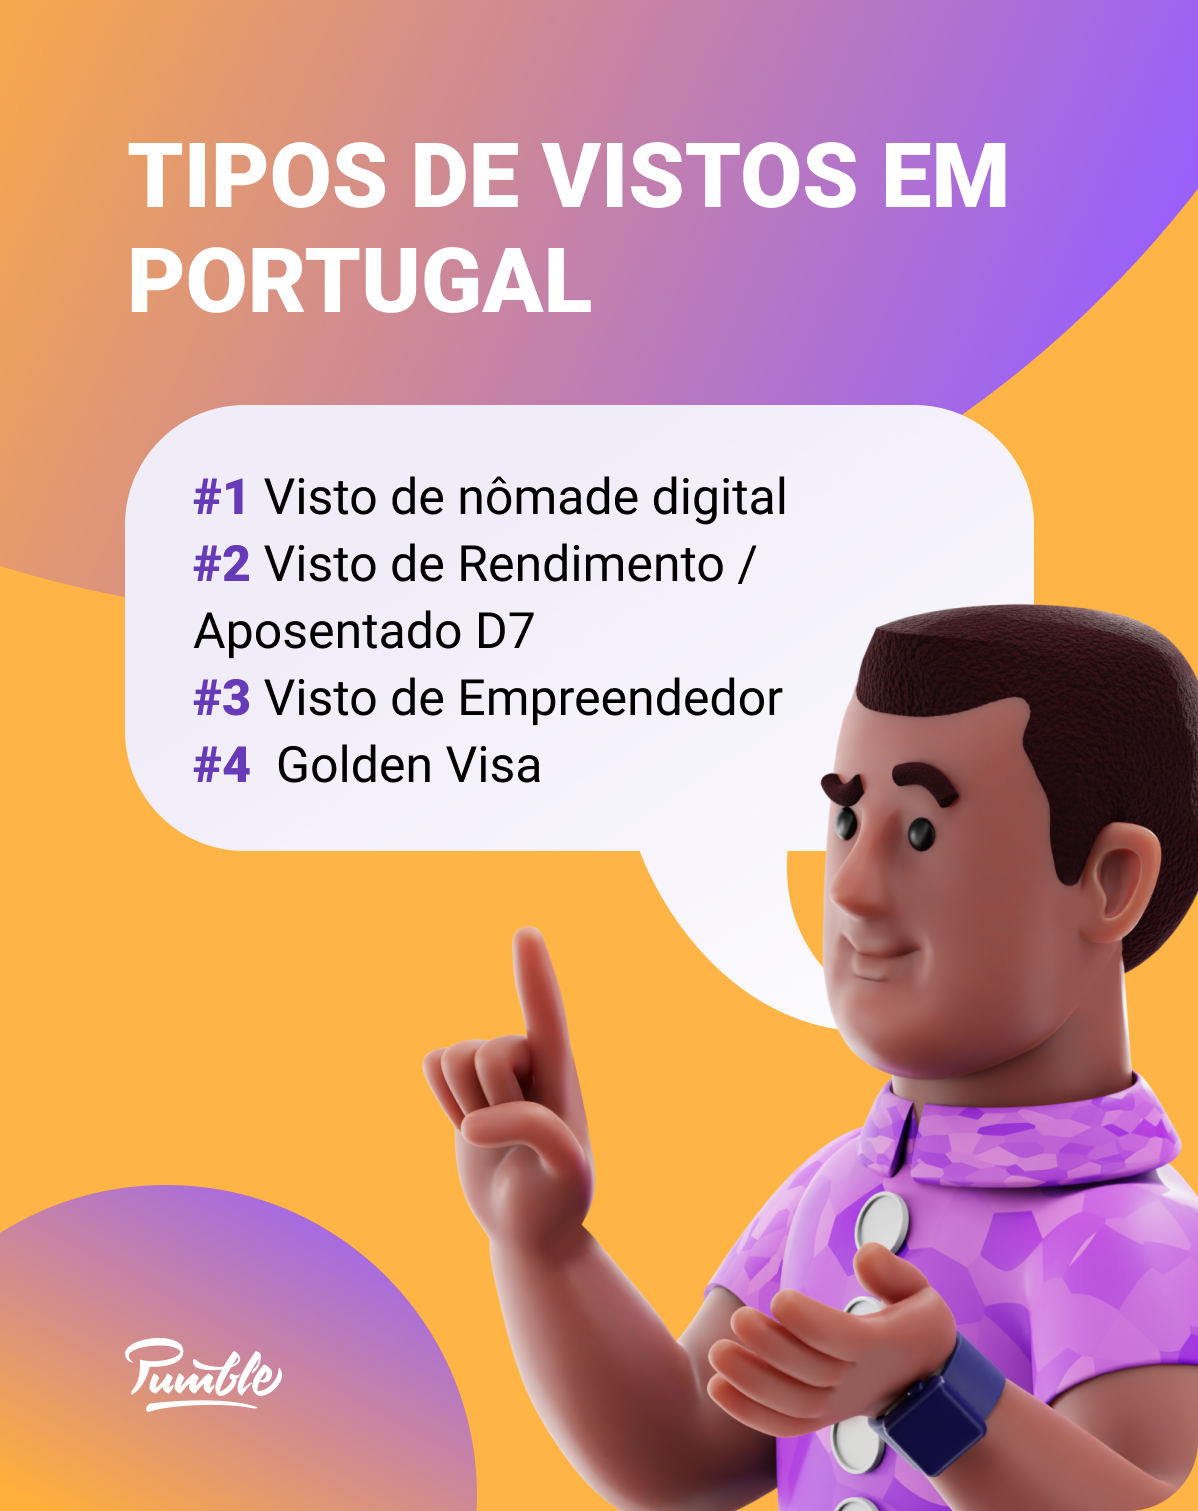 Existem 4 tipos diferentes de vistos portugueses que os nômades digitais podem solicitar